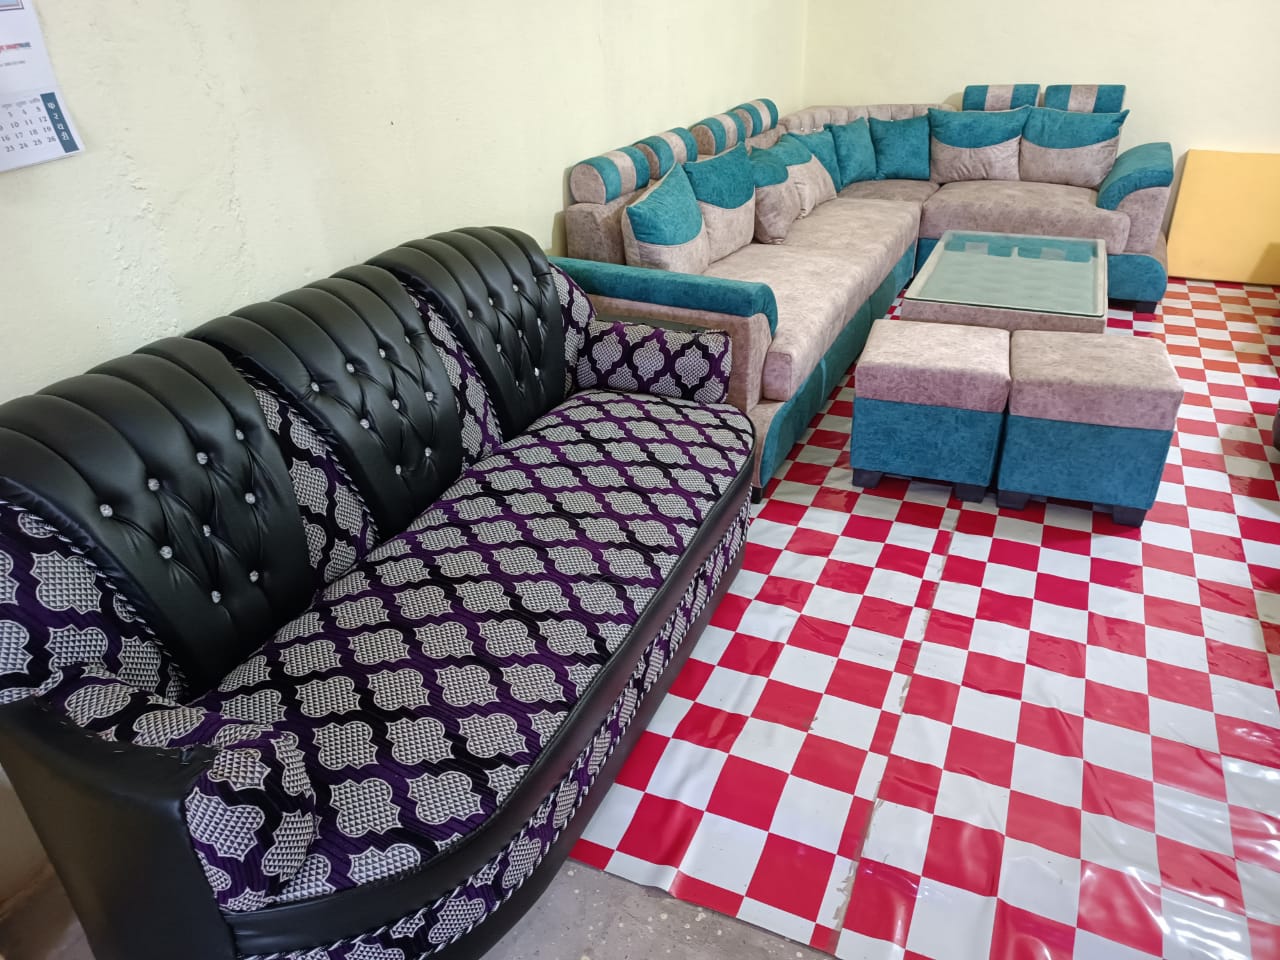 New sofa shop near tupudana Ranchi